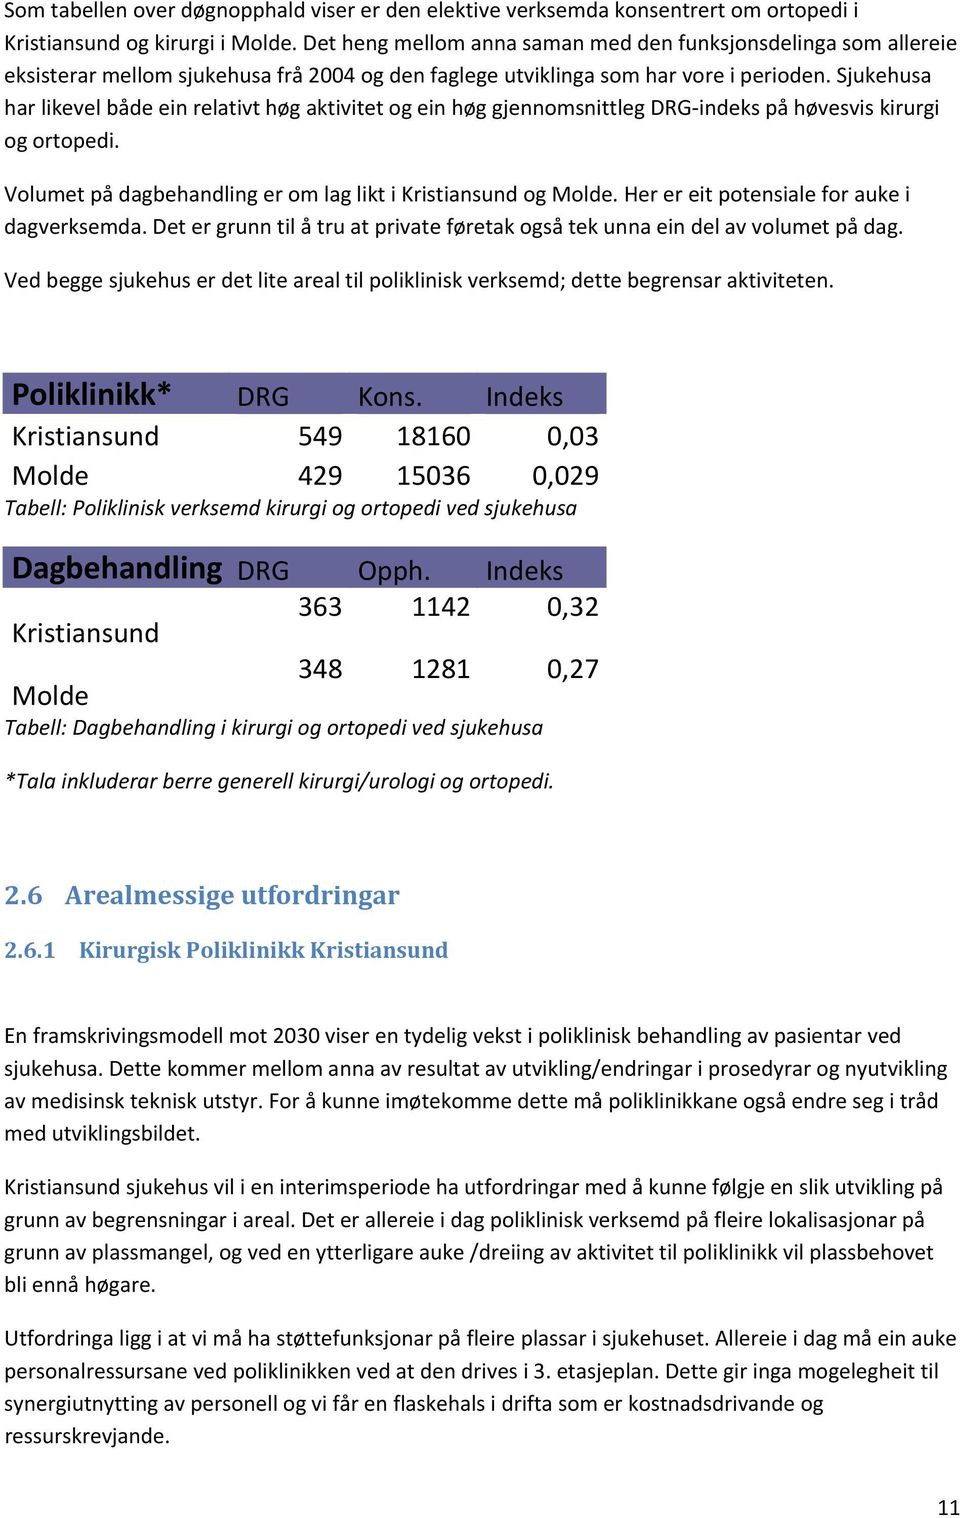 Sjukehusa har likevel både ein relativt høg aktivitet og ein høg gjennomsnittleg DRG indeks på høvesvis kirurgi og ortopedi. Volumet på dagbehandling er om lag likt i Kristiansund og Molde.